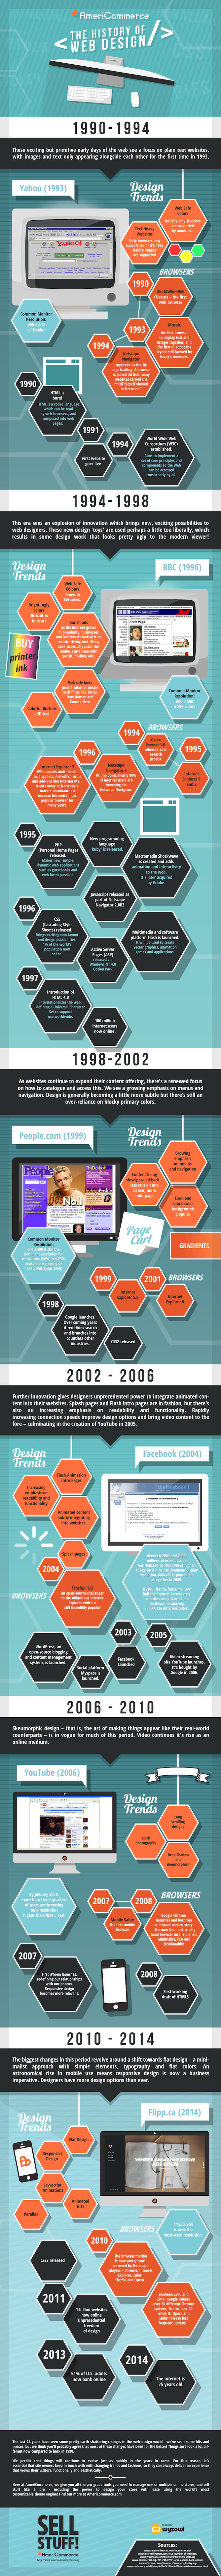 histoire du webdesign